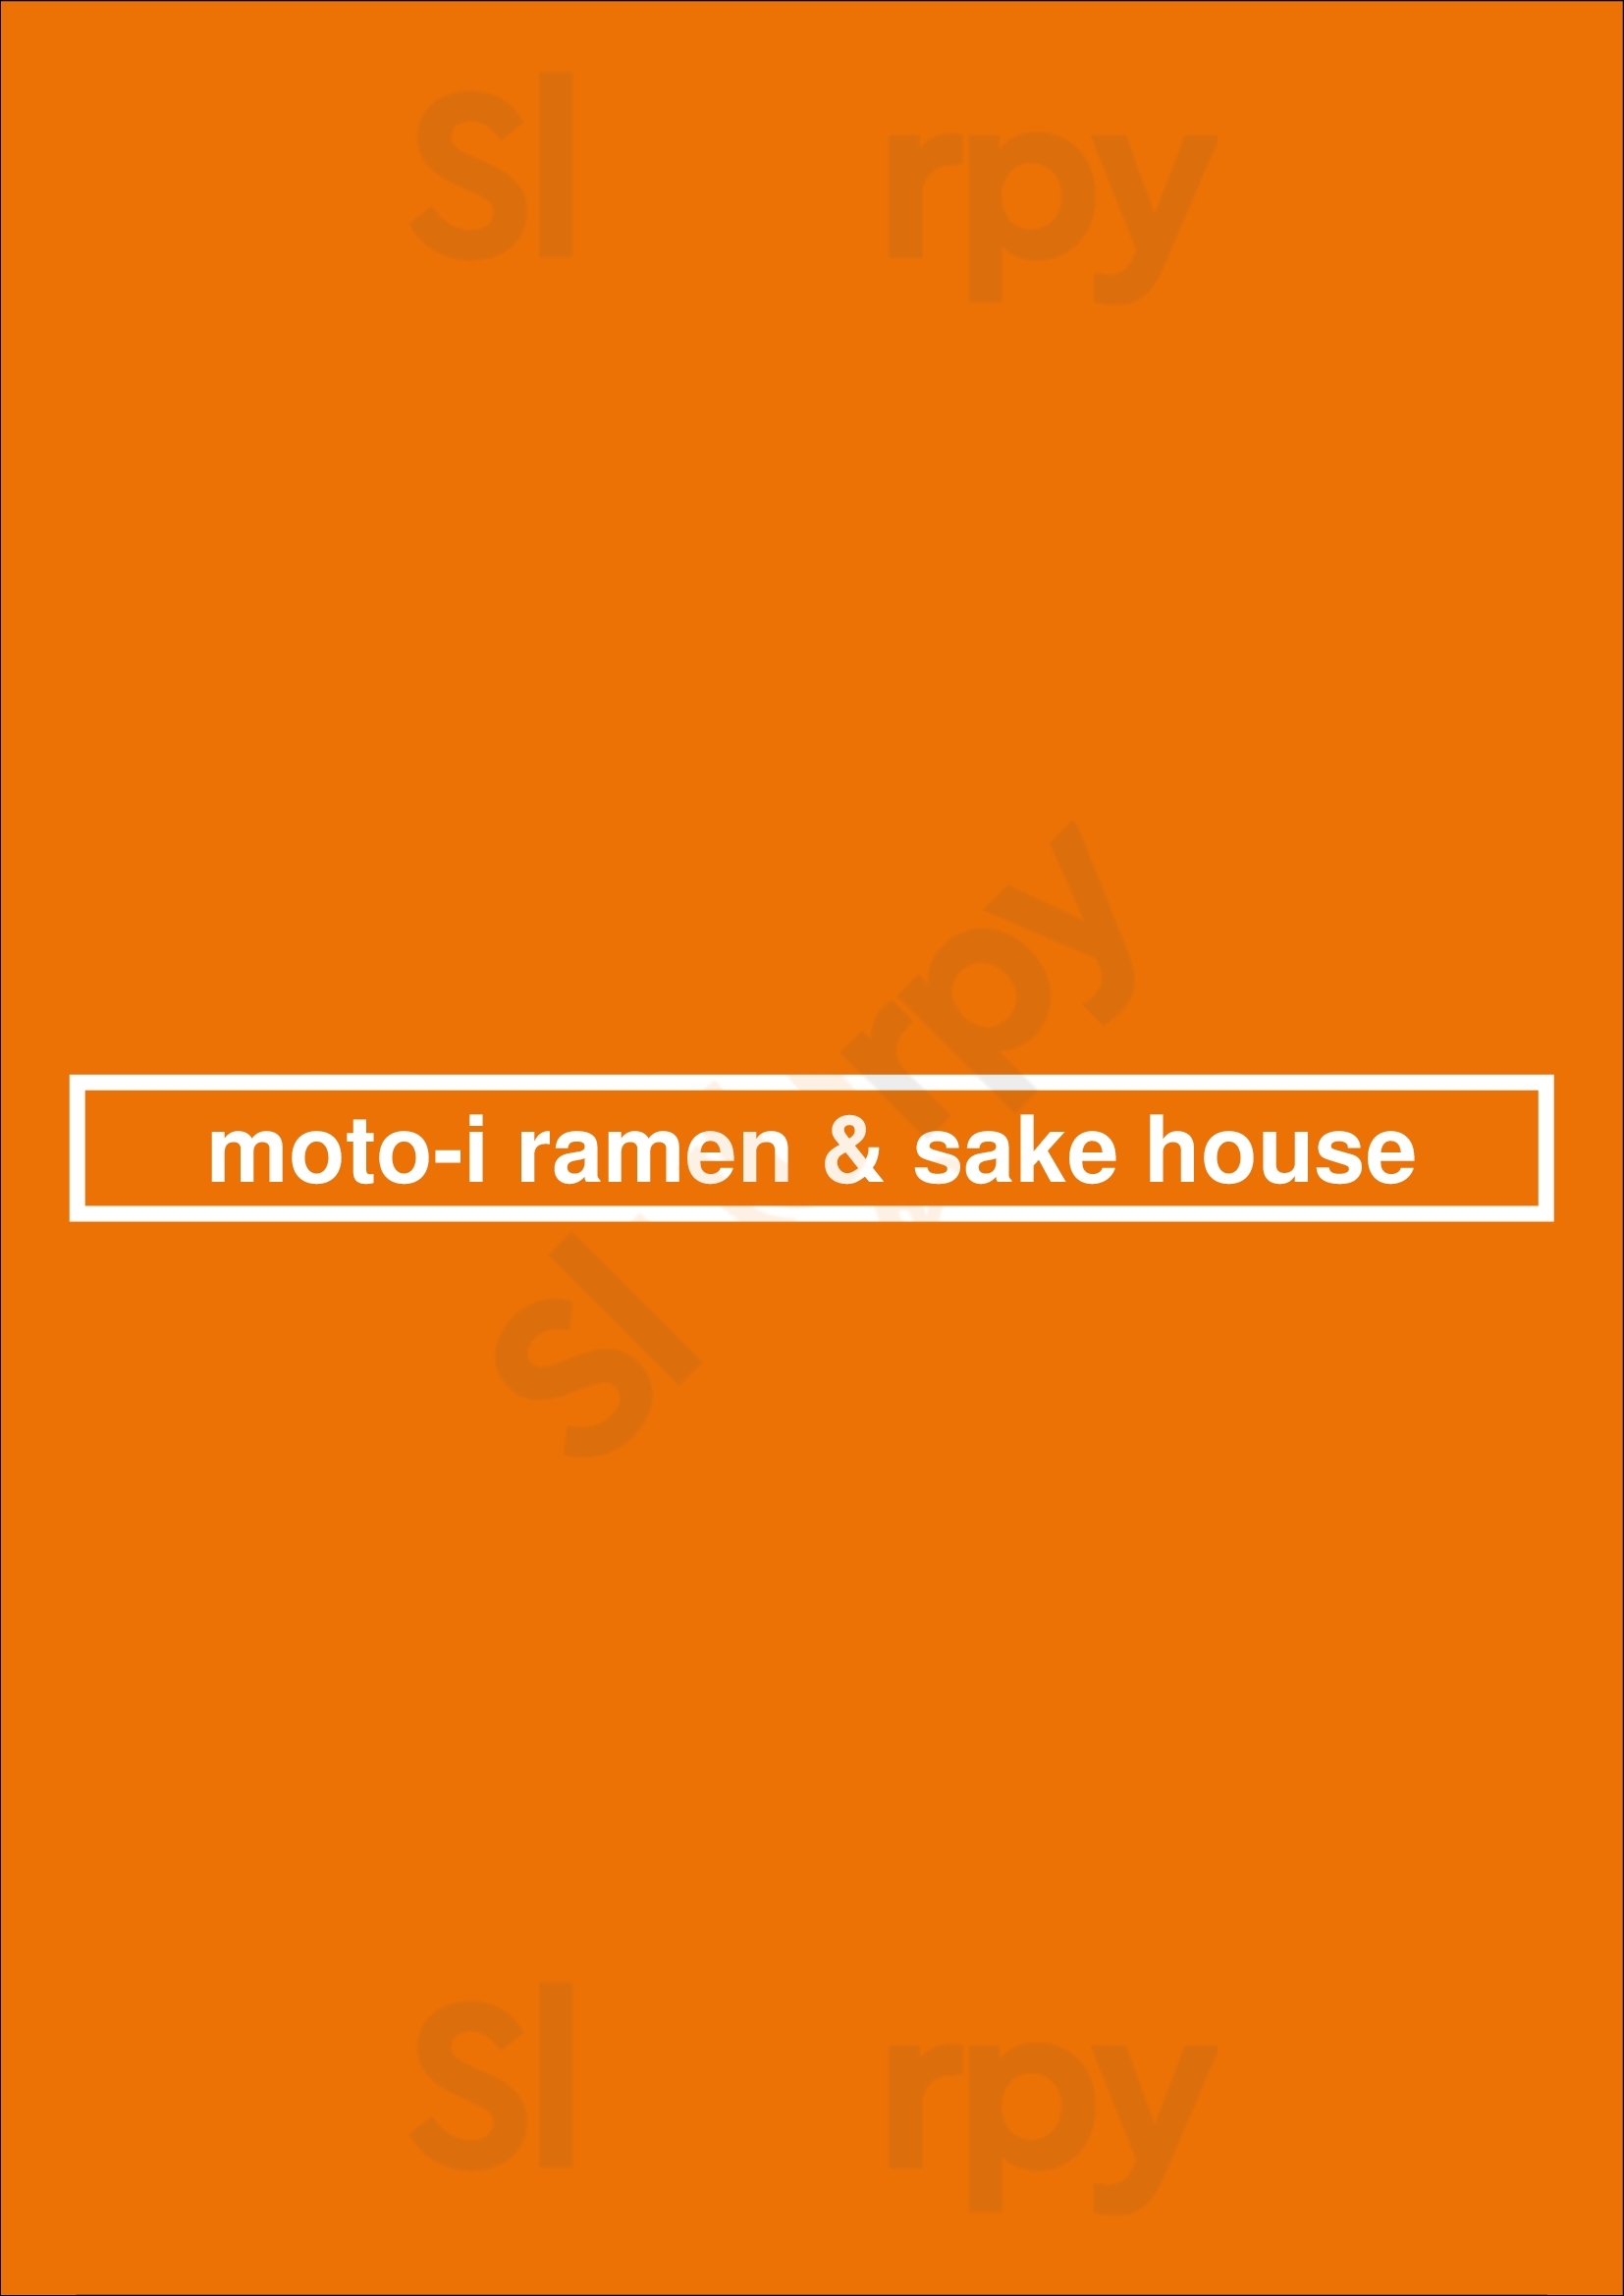 Moto-i Ramen And Sake House Minneapolis Menu - 1